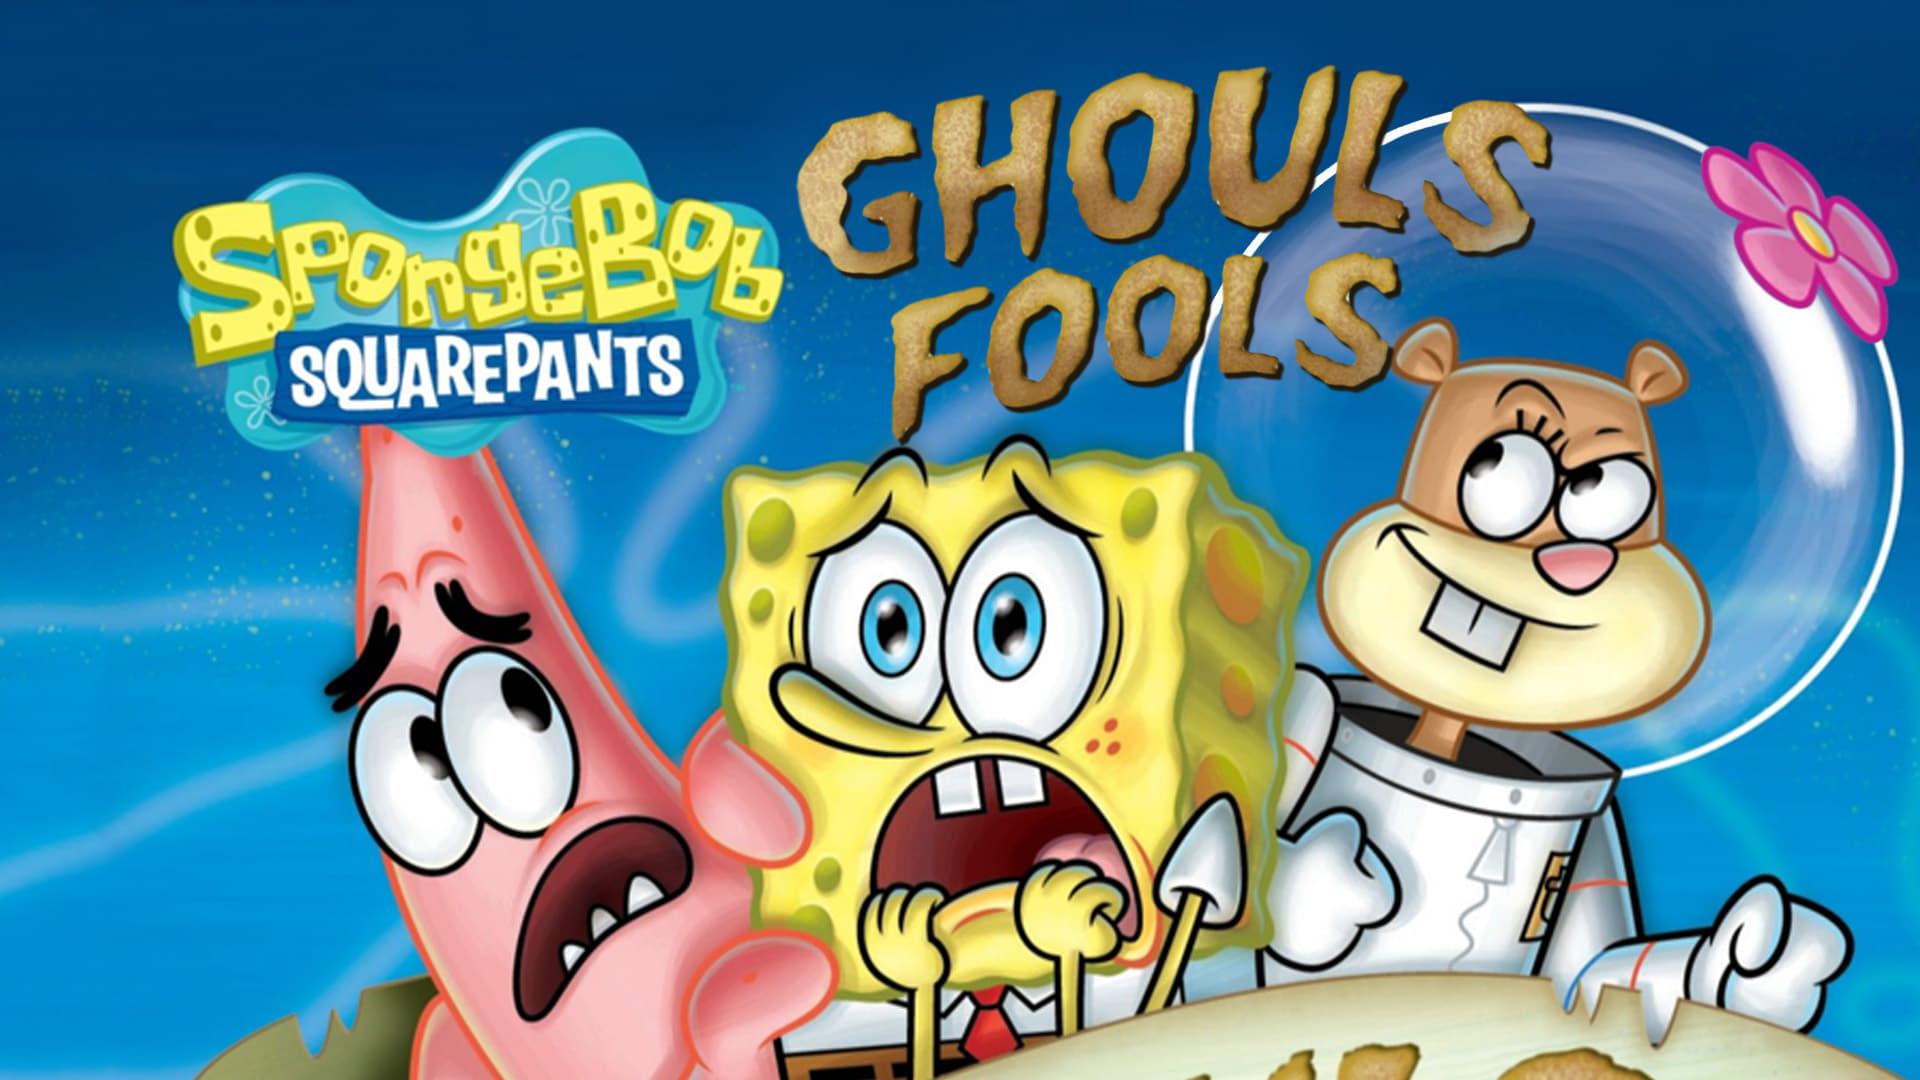 SpongeBob SquarePants: Ghouls Fools backdrop